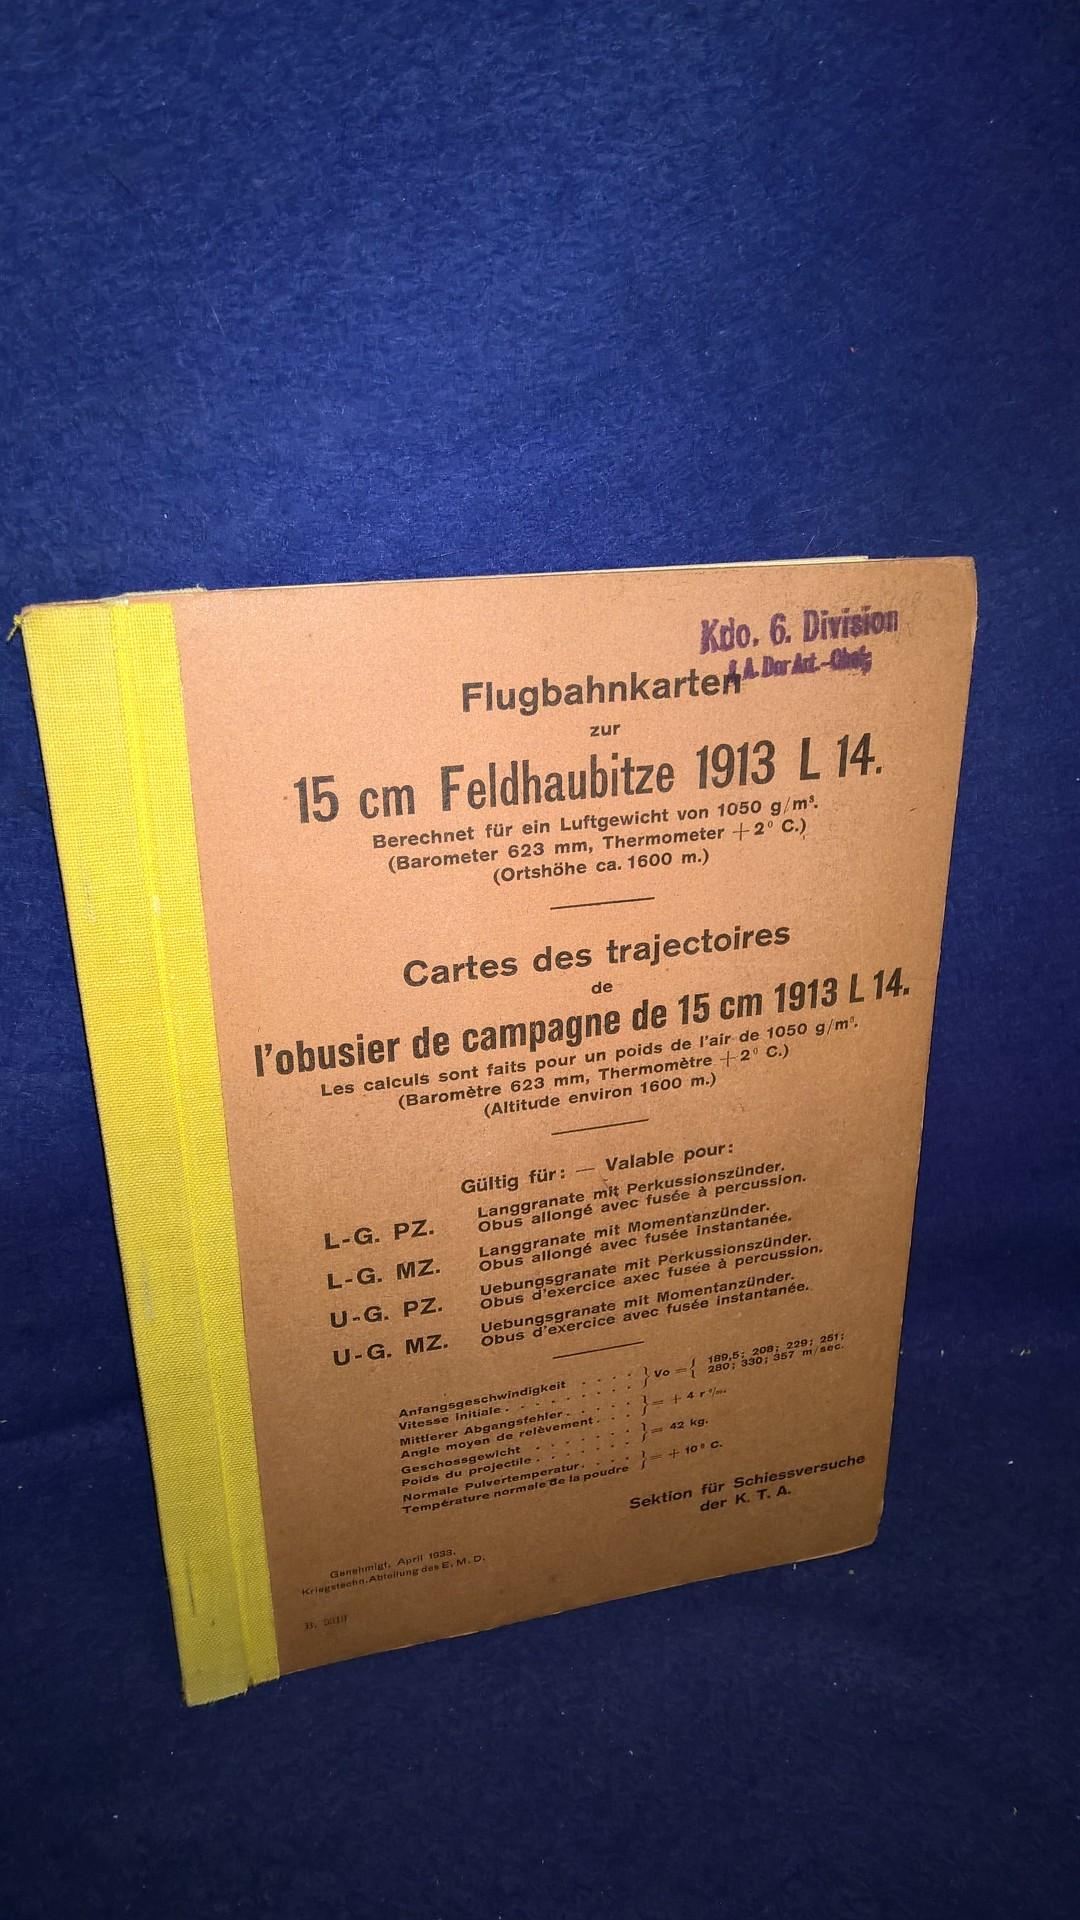 Flugbahnkarten zur 15 cm Feldhaubitze 1913 L 14 (deutsche Fertigung durch Krupp). Selten.